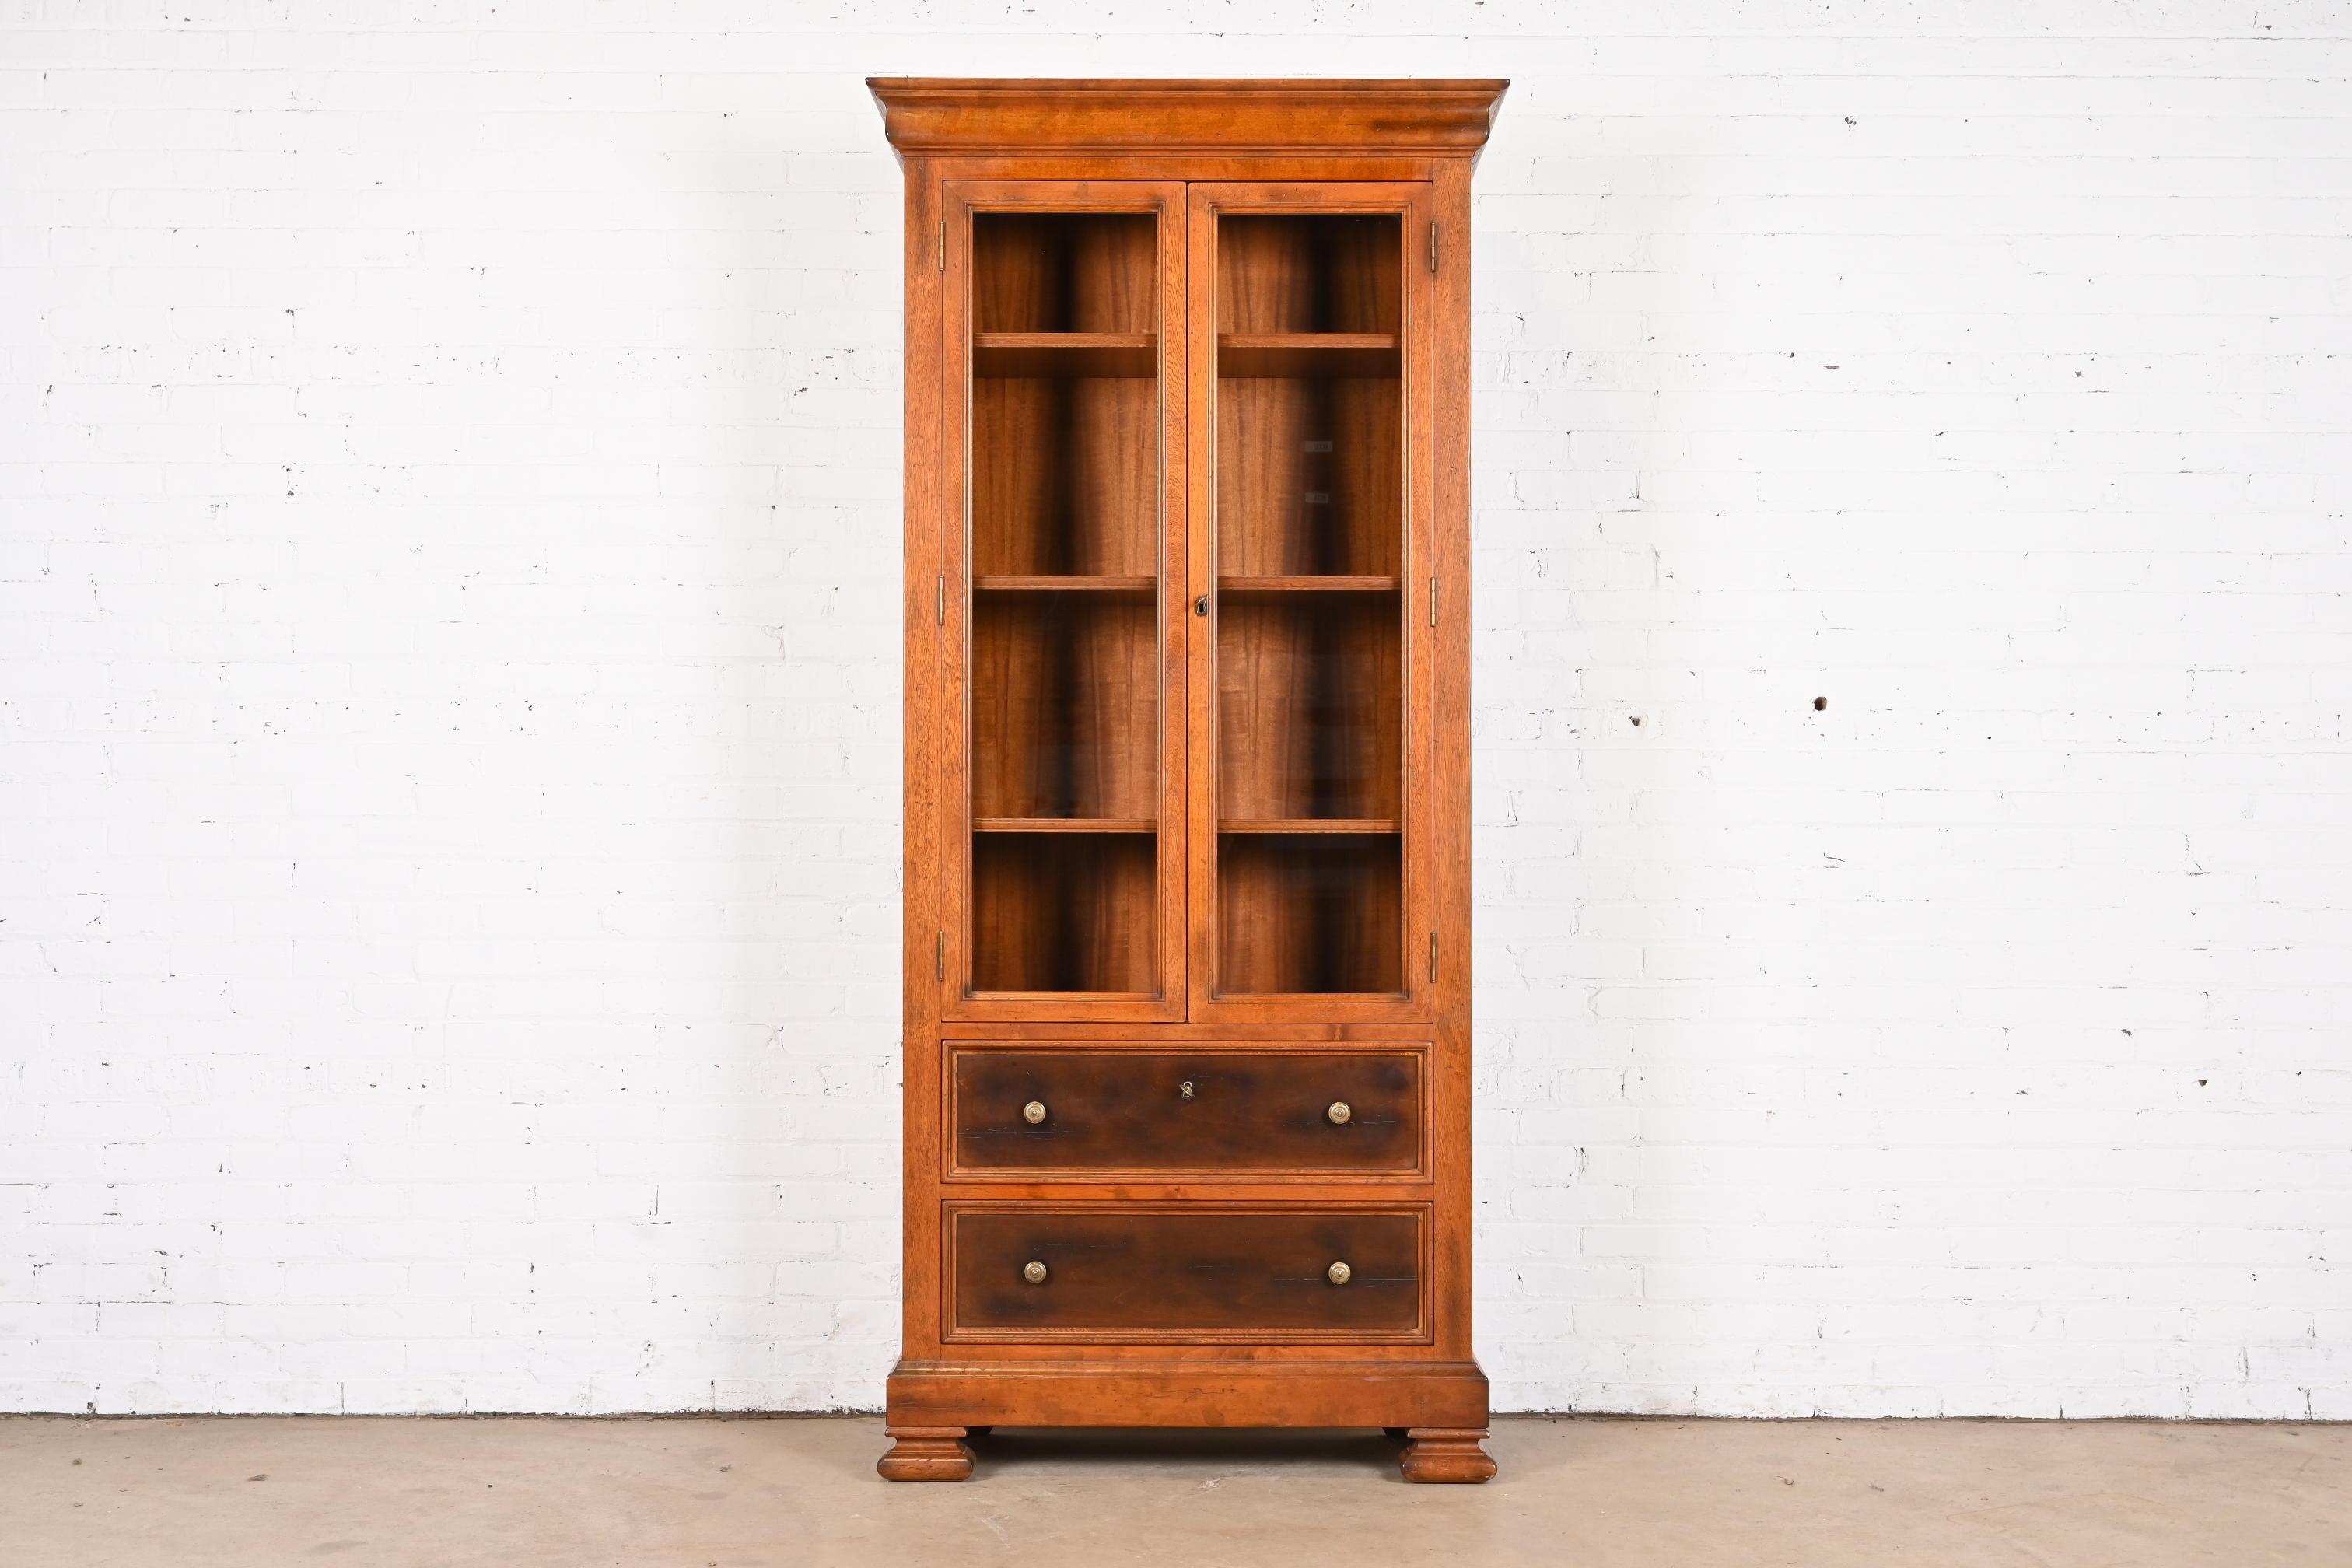 Remarquable armoire bibliothèque de style provincial italien ou rustique européen.

Par Baker Furniture, Collection 